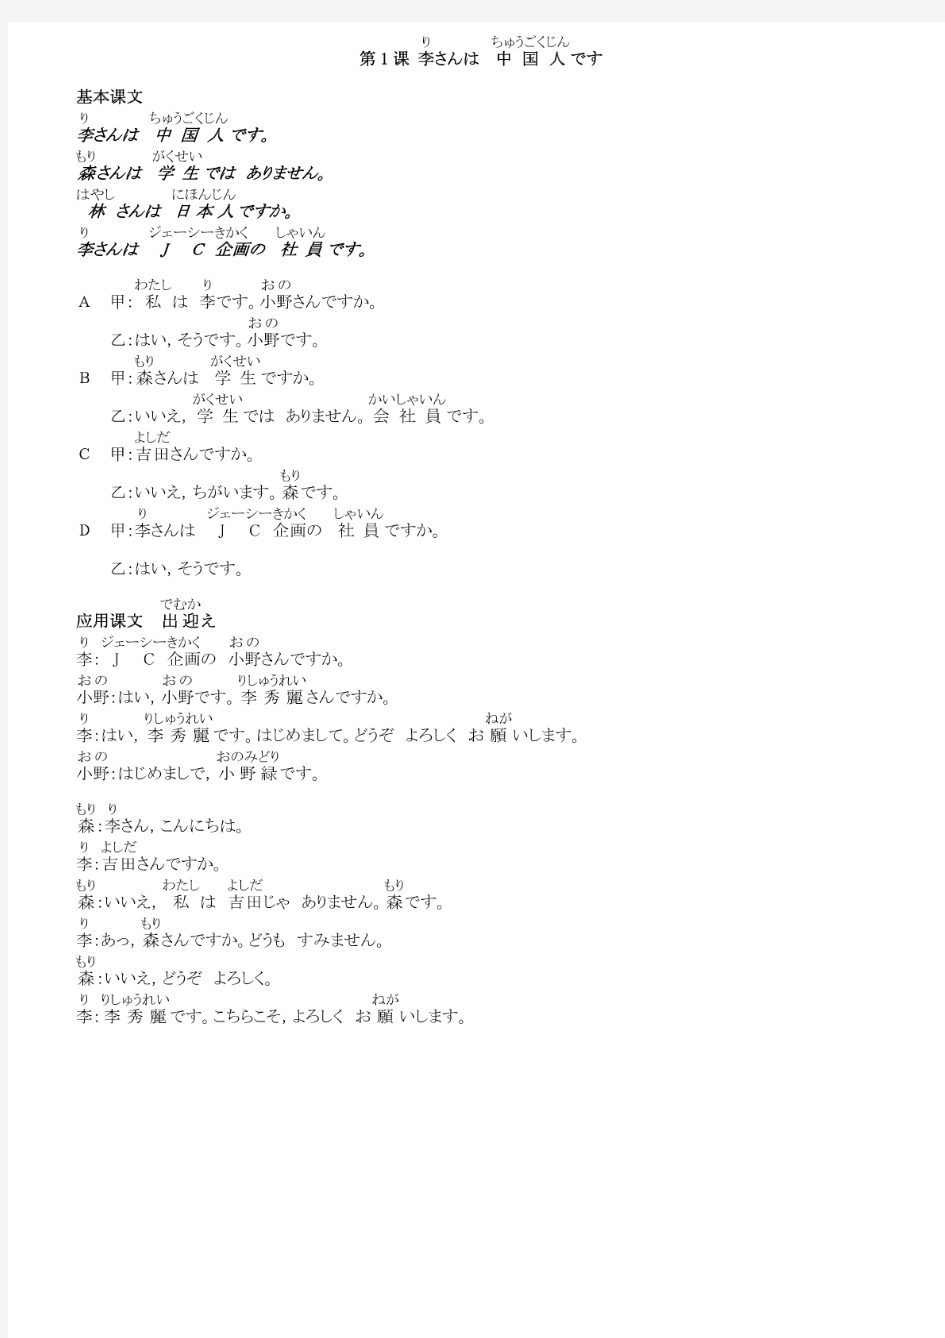 标准日本语初级上册注音课文、译文和单词